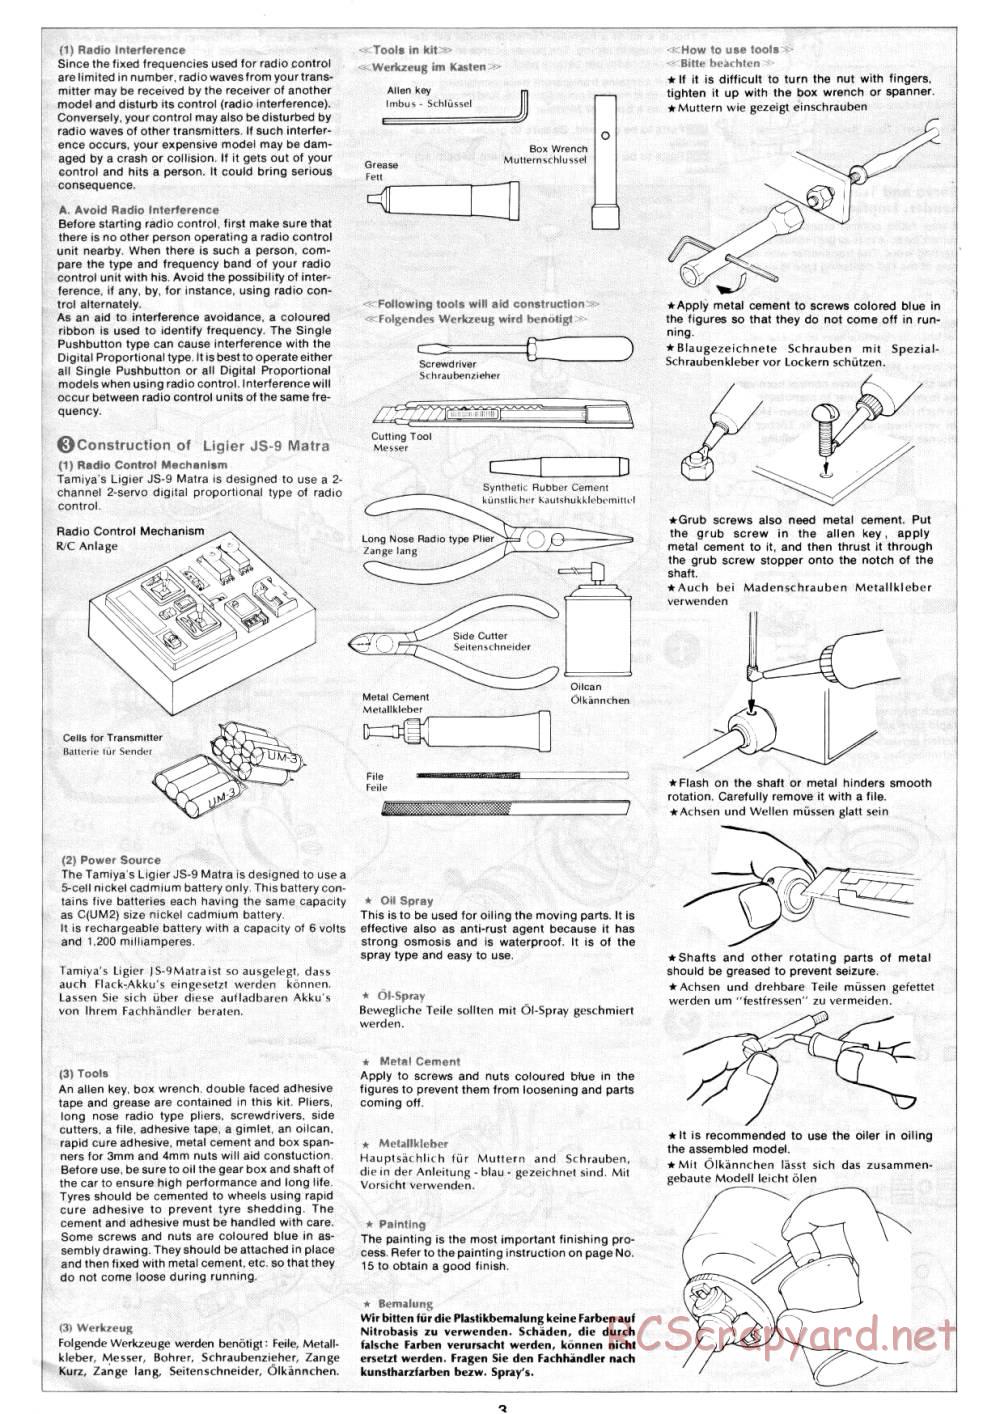 Tamiya - Ligier JS9 Matra - 58010 - Manual - Page 3